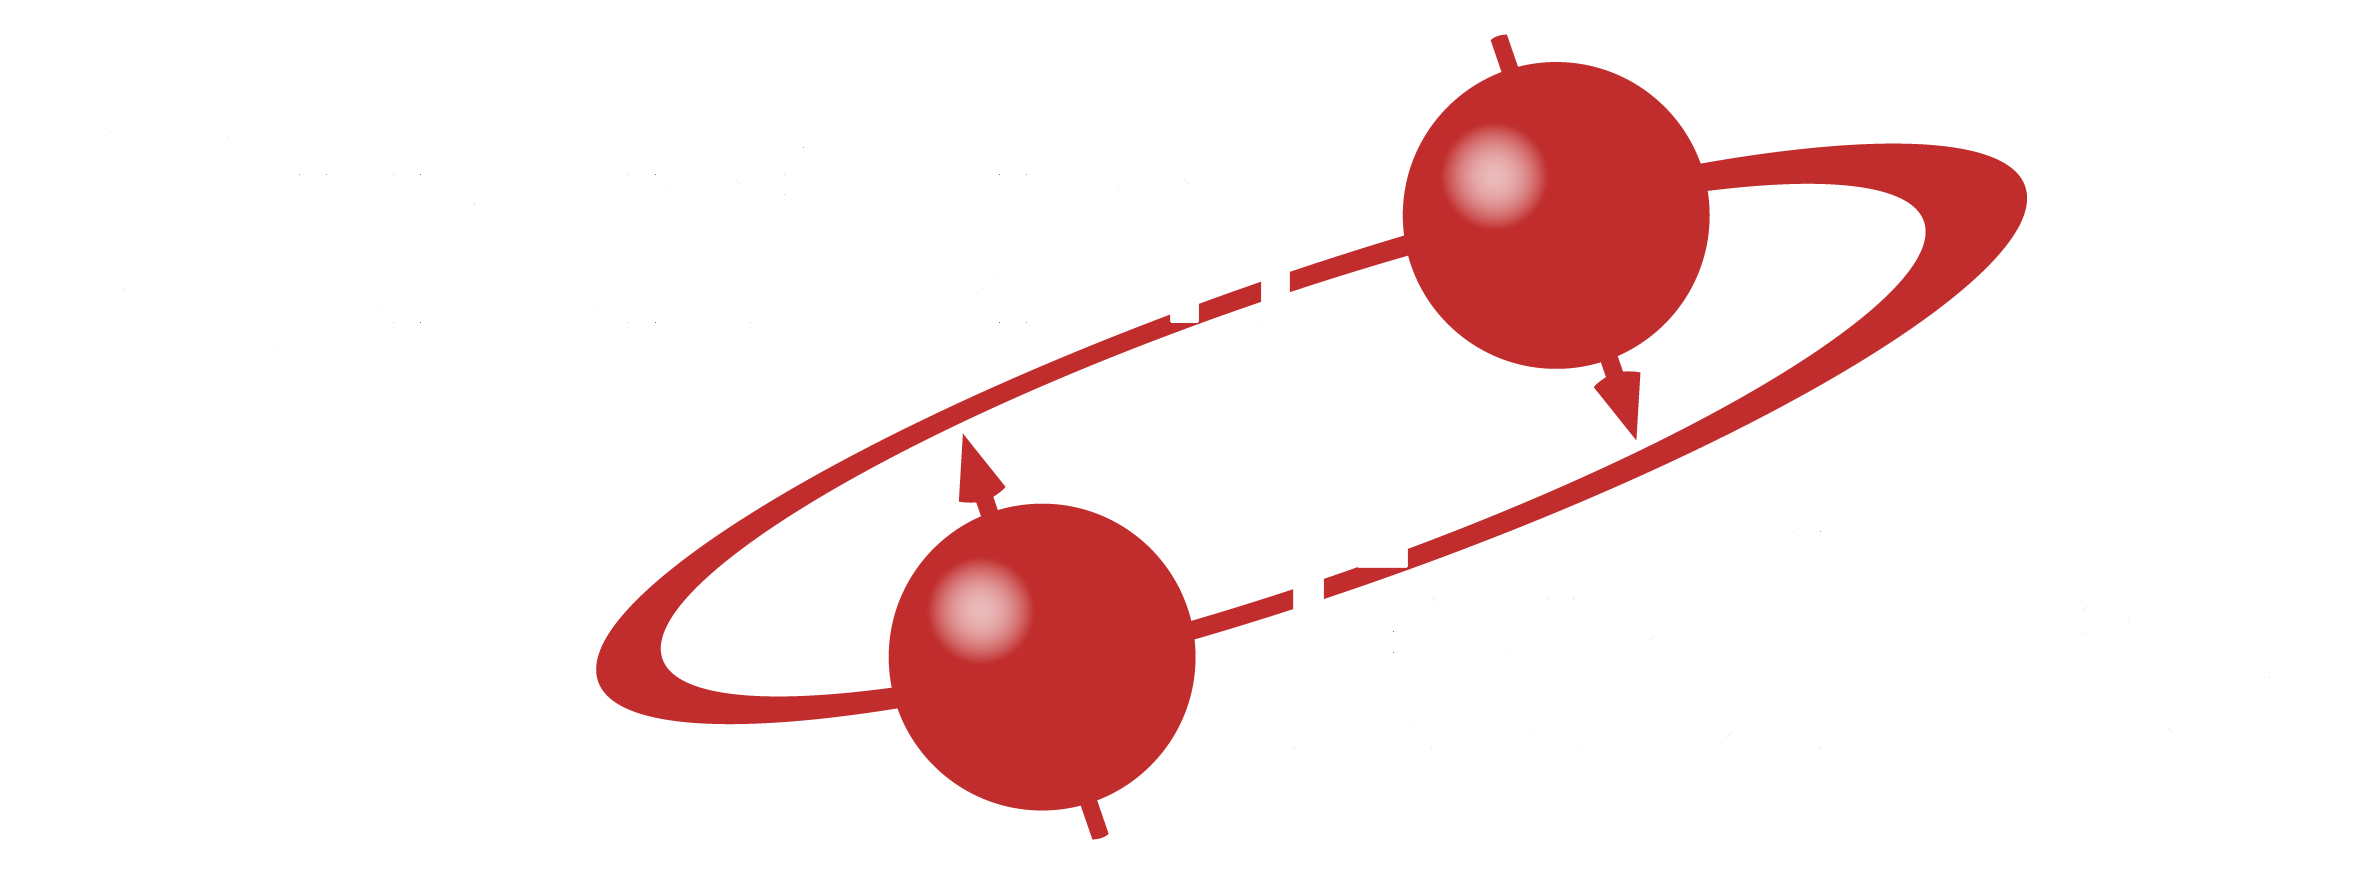 Proyecto Quantum Explore